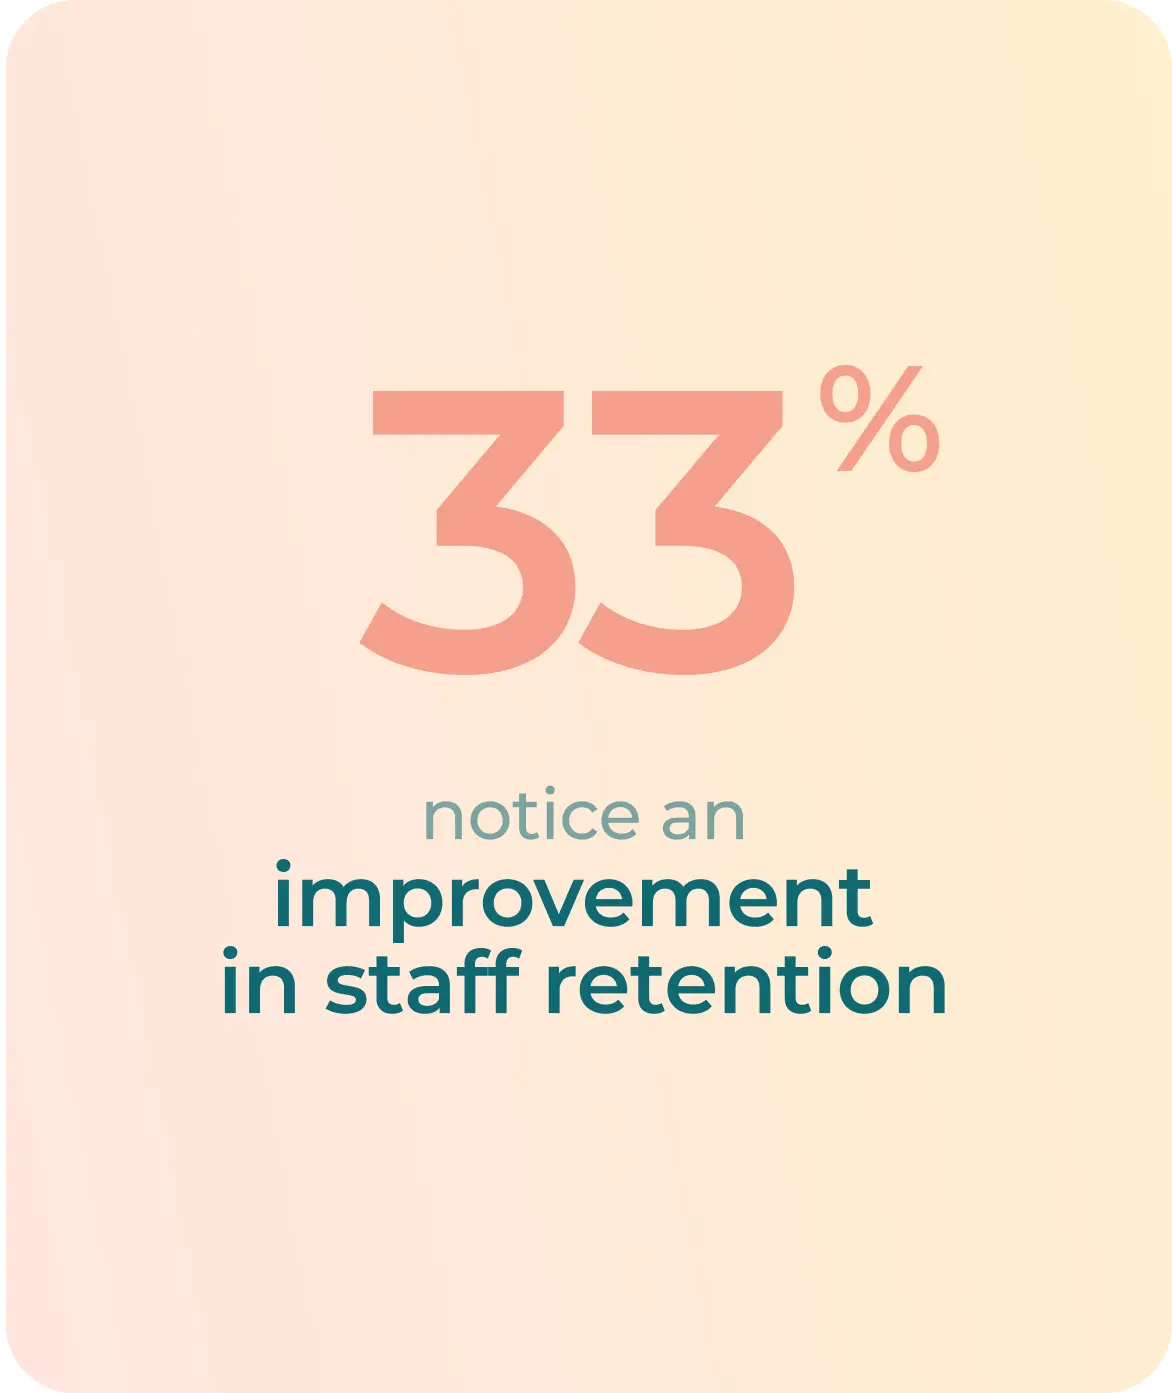 33% notice an improvement in staff retention